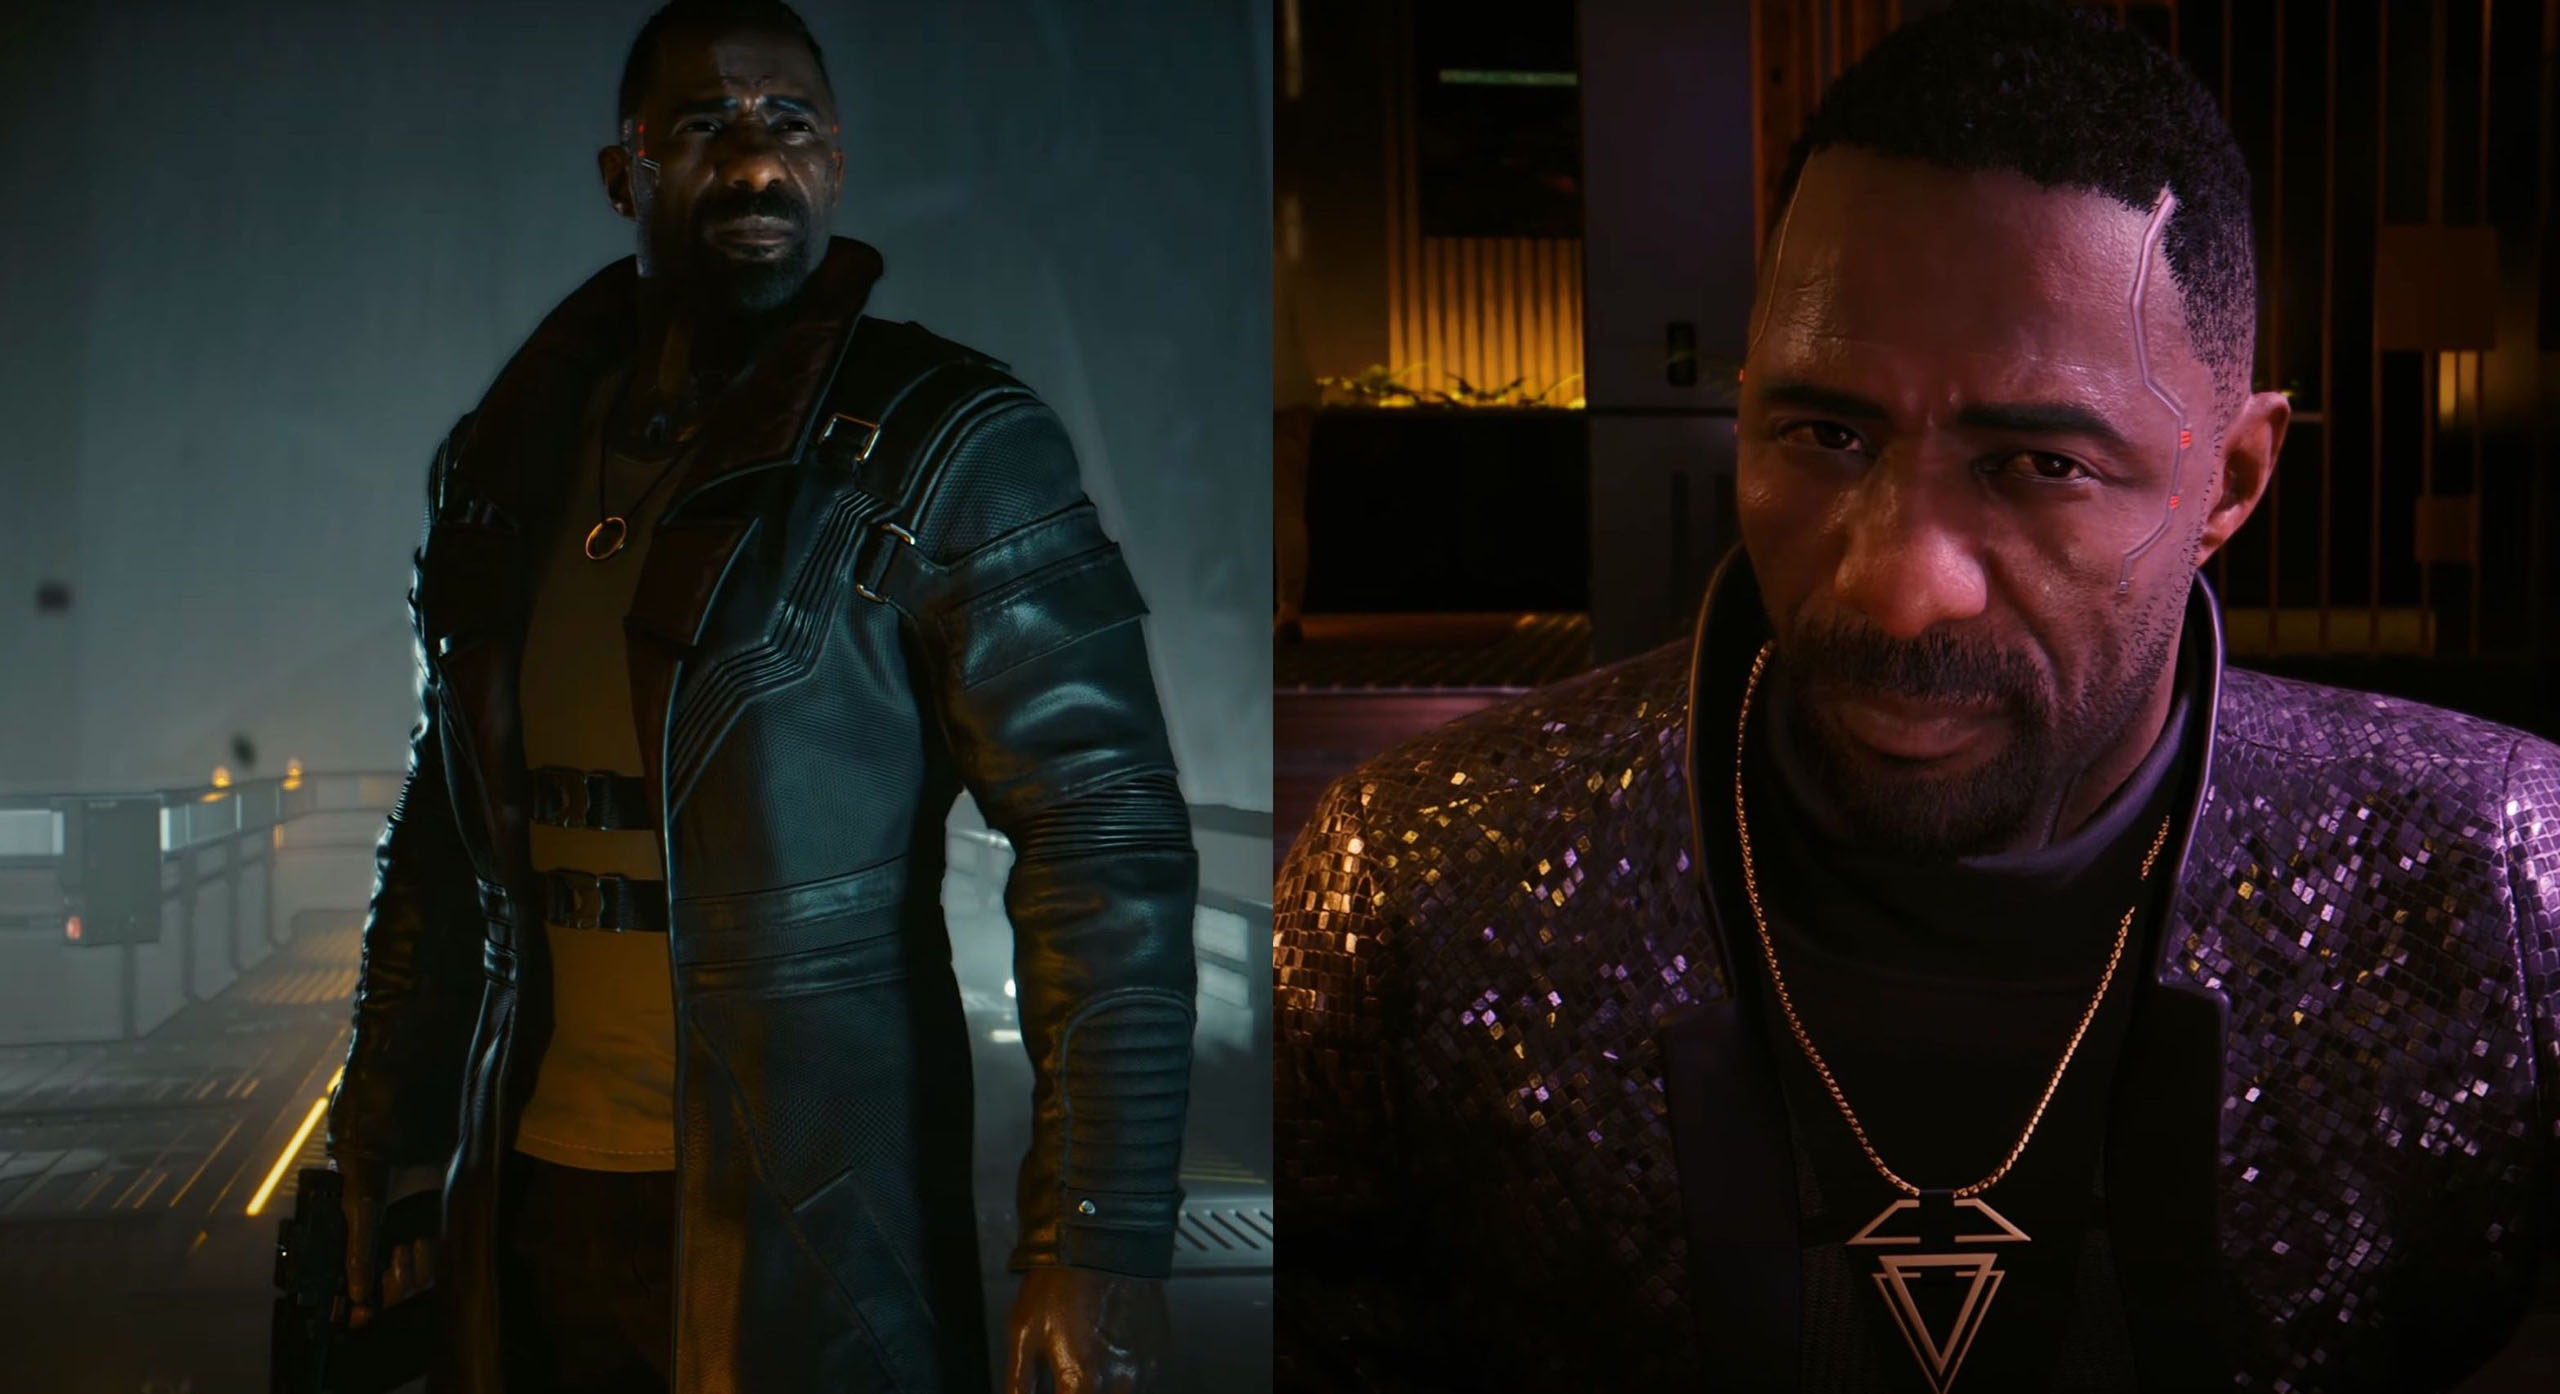 Idris Elba ist eine interessante Besatzung, weil er viele Rollen spielen kann: Der harte Haudegen, der einsame Wolf in Luther. Aber auch den Charme eines James Bond versprühen kann, was wir hier in dieser Szene sehen. Mit ihm kann CD Projekt viel variieren. 